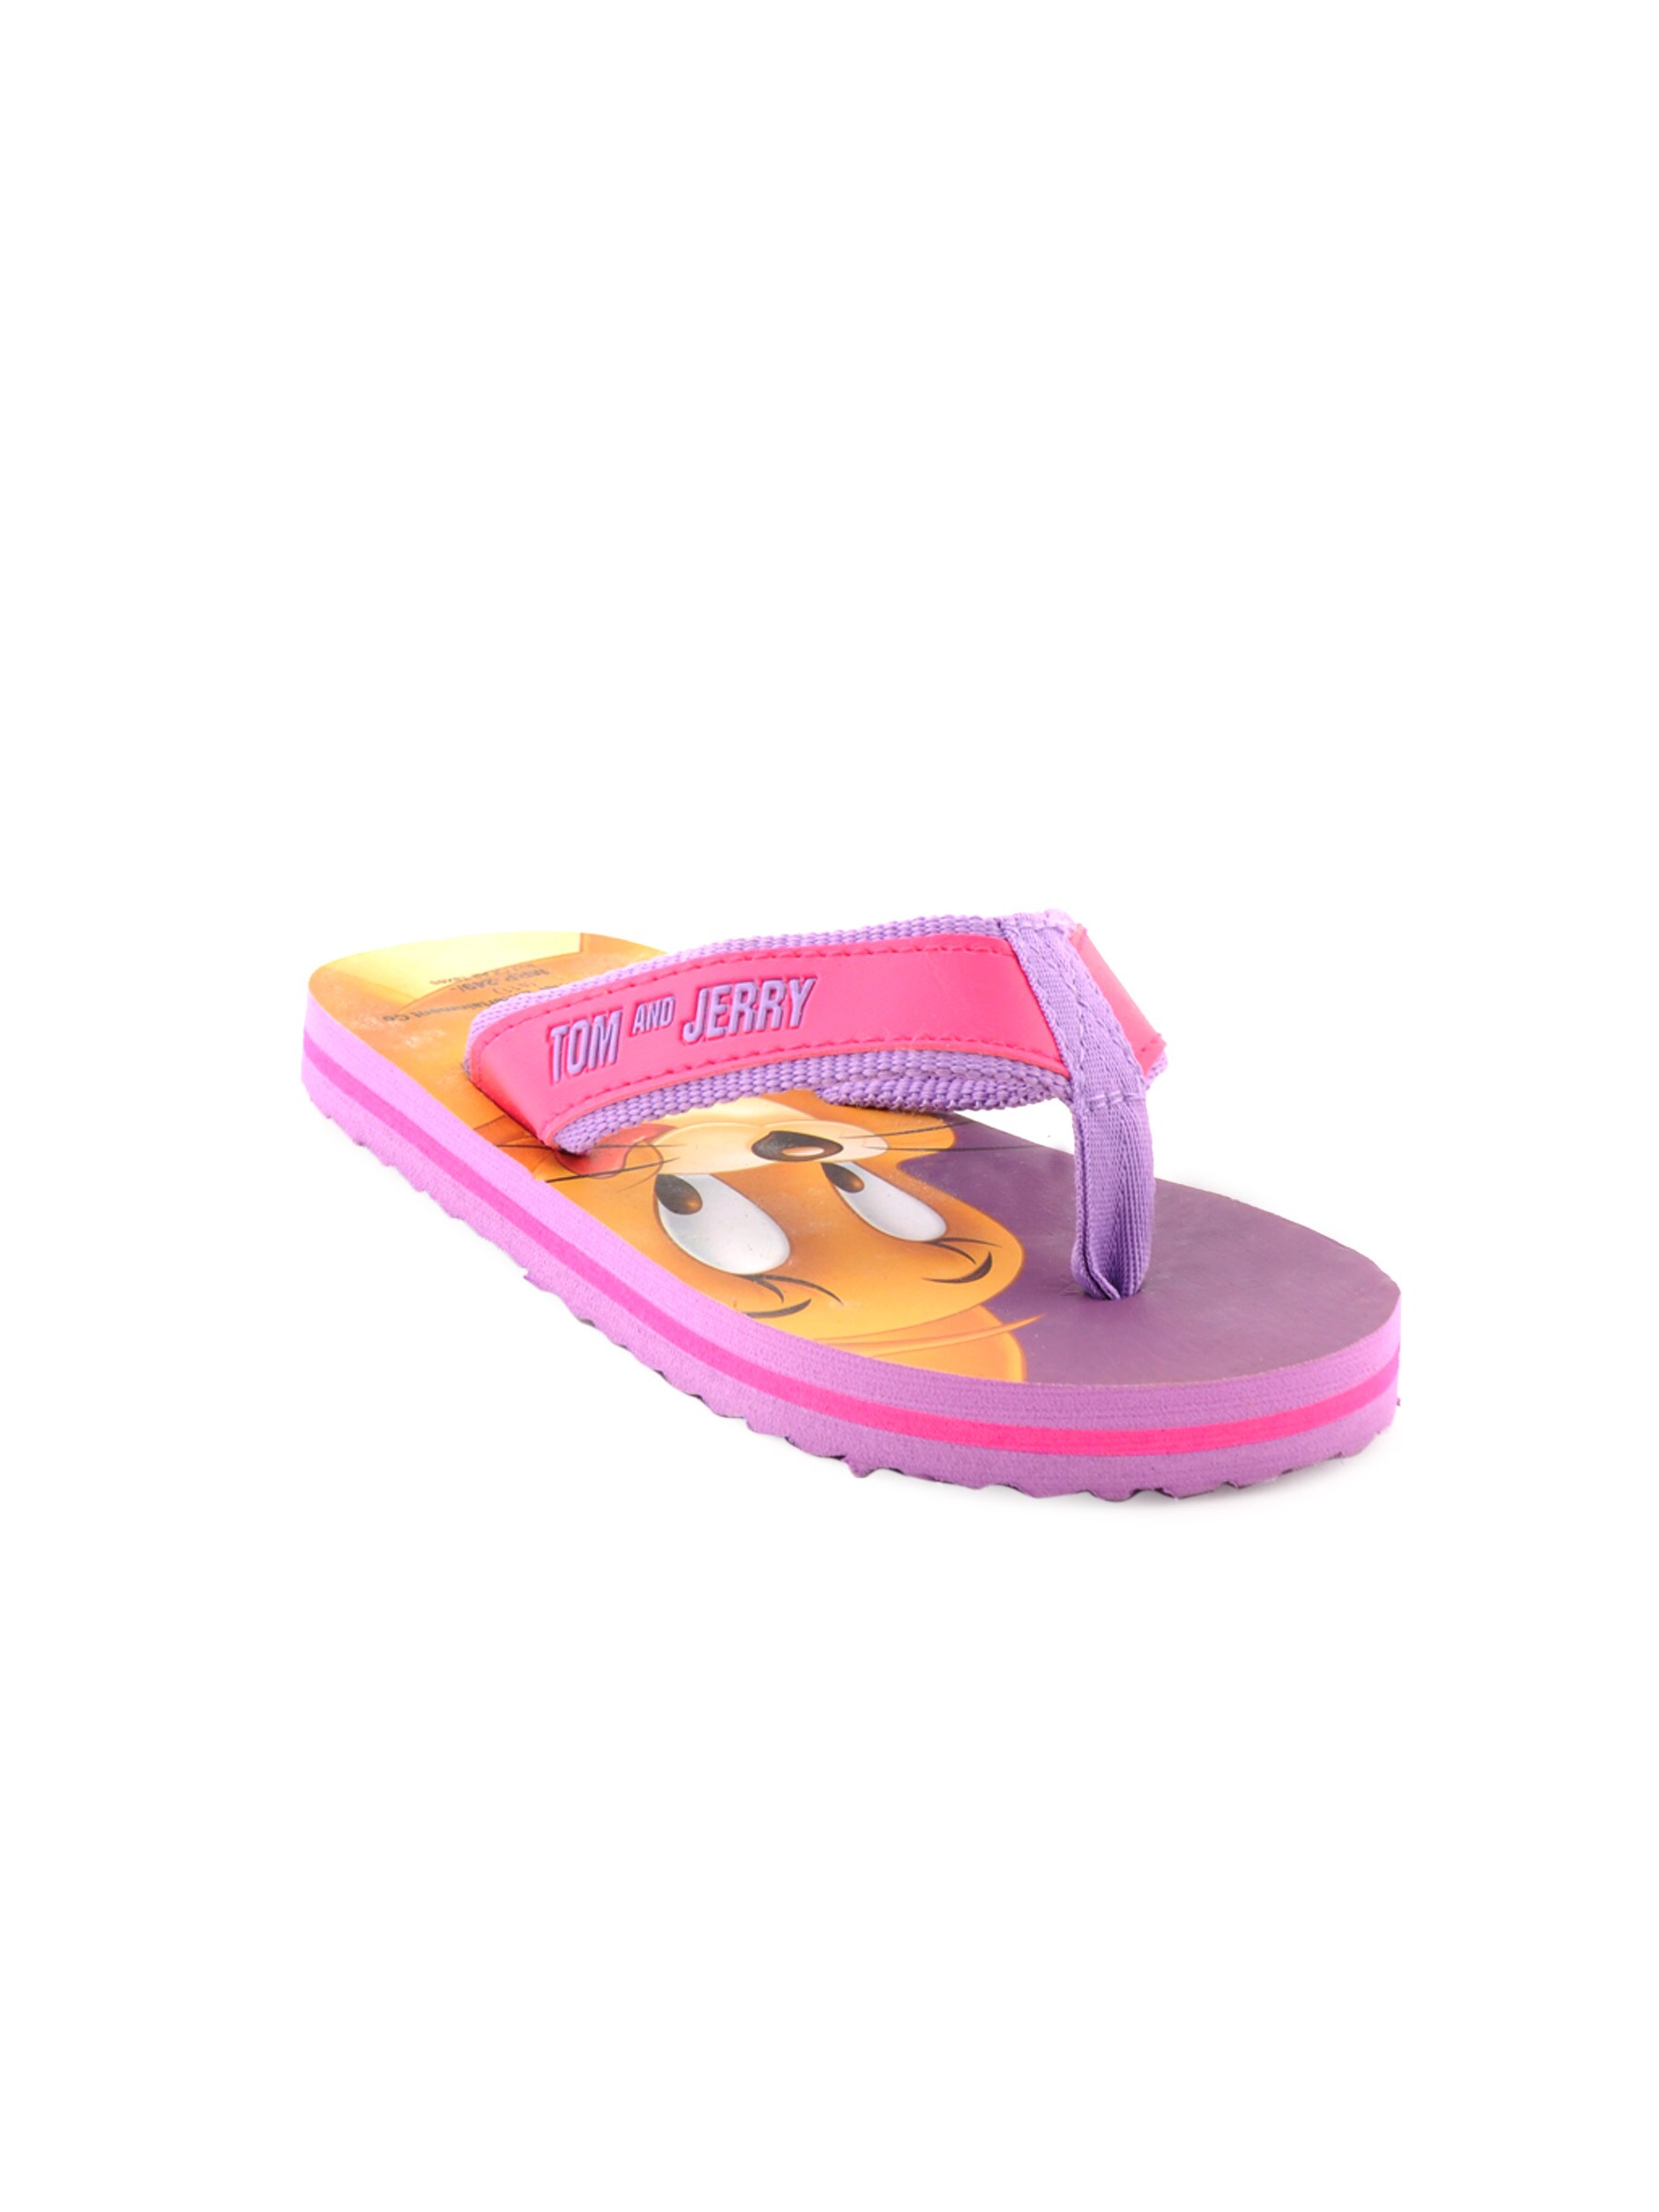 Warner Bros Kids Unisex TJ Cheese Flops Purple Slippers